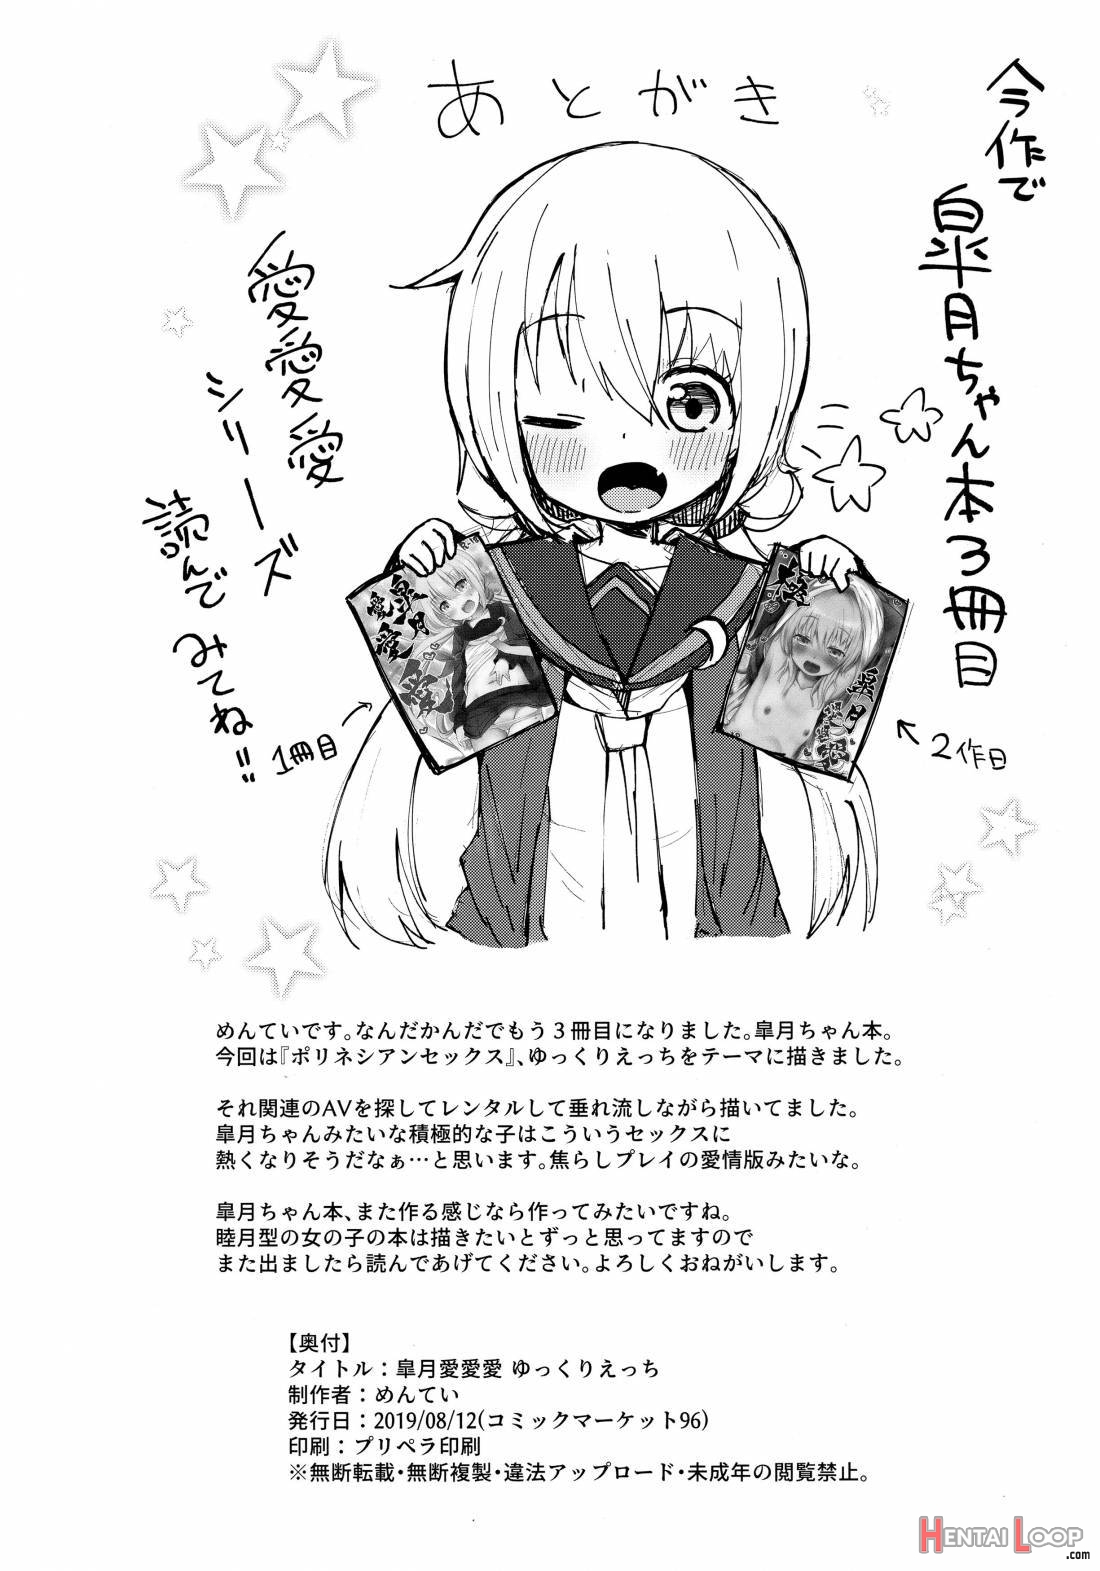 Satsuki AiAiAi Yukkuri Ecchi page 21